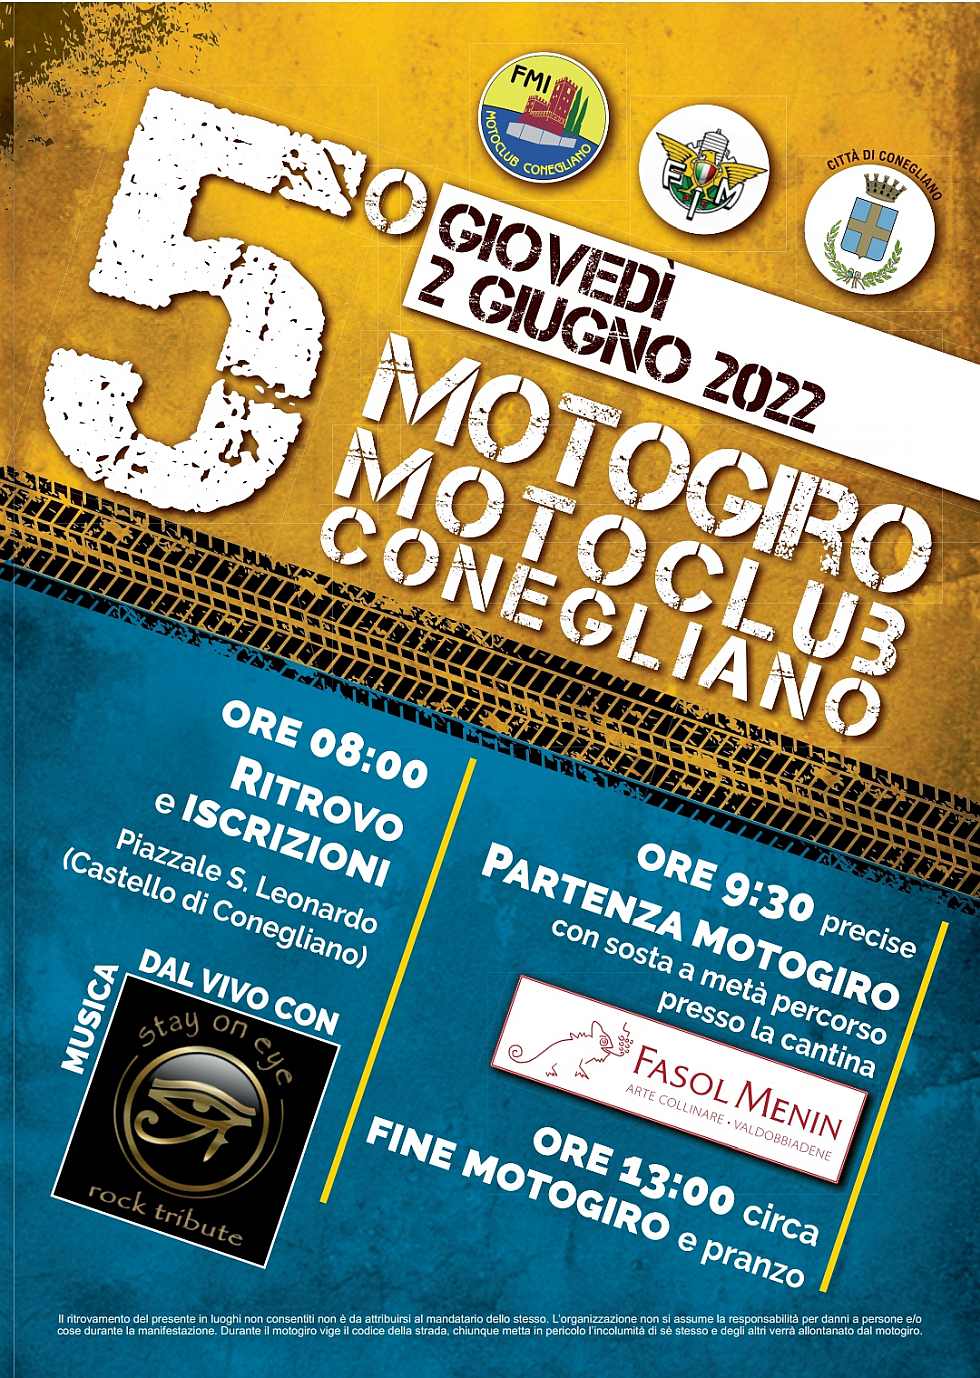 Conegliano (TV)
"5° Motogiro Motoclub Conegliano"
2 Giugno 2022 